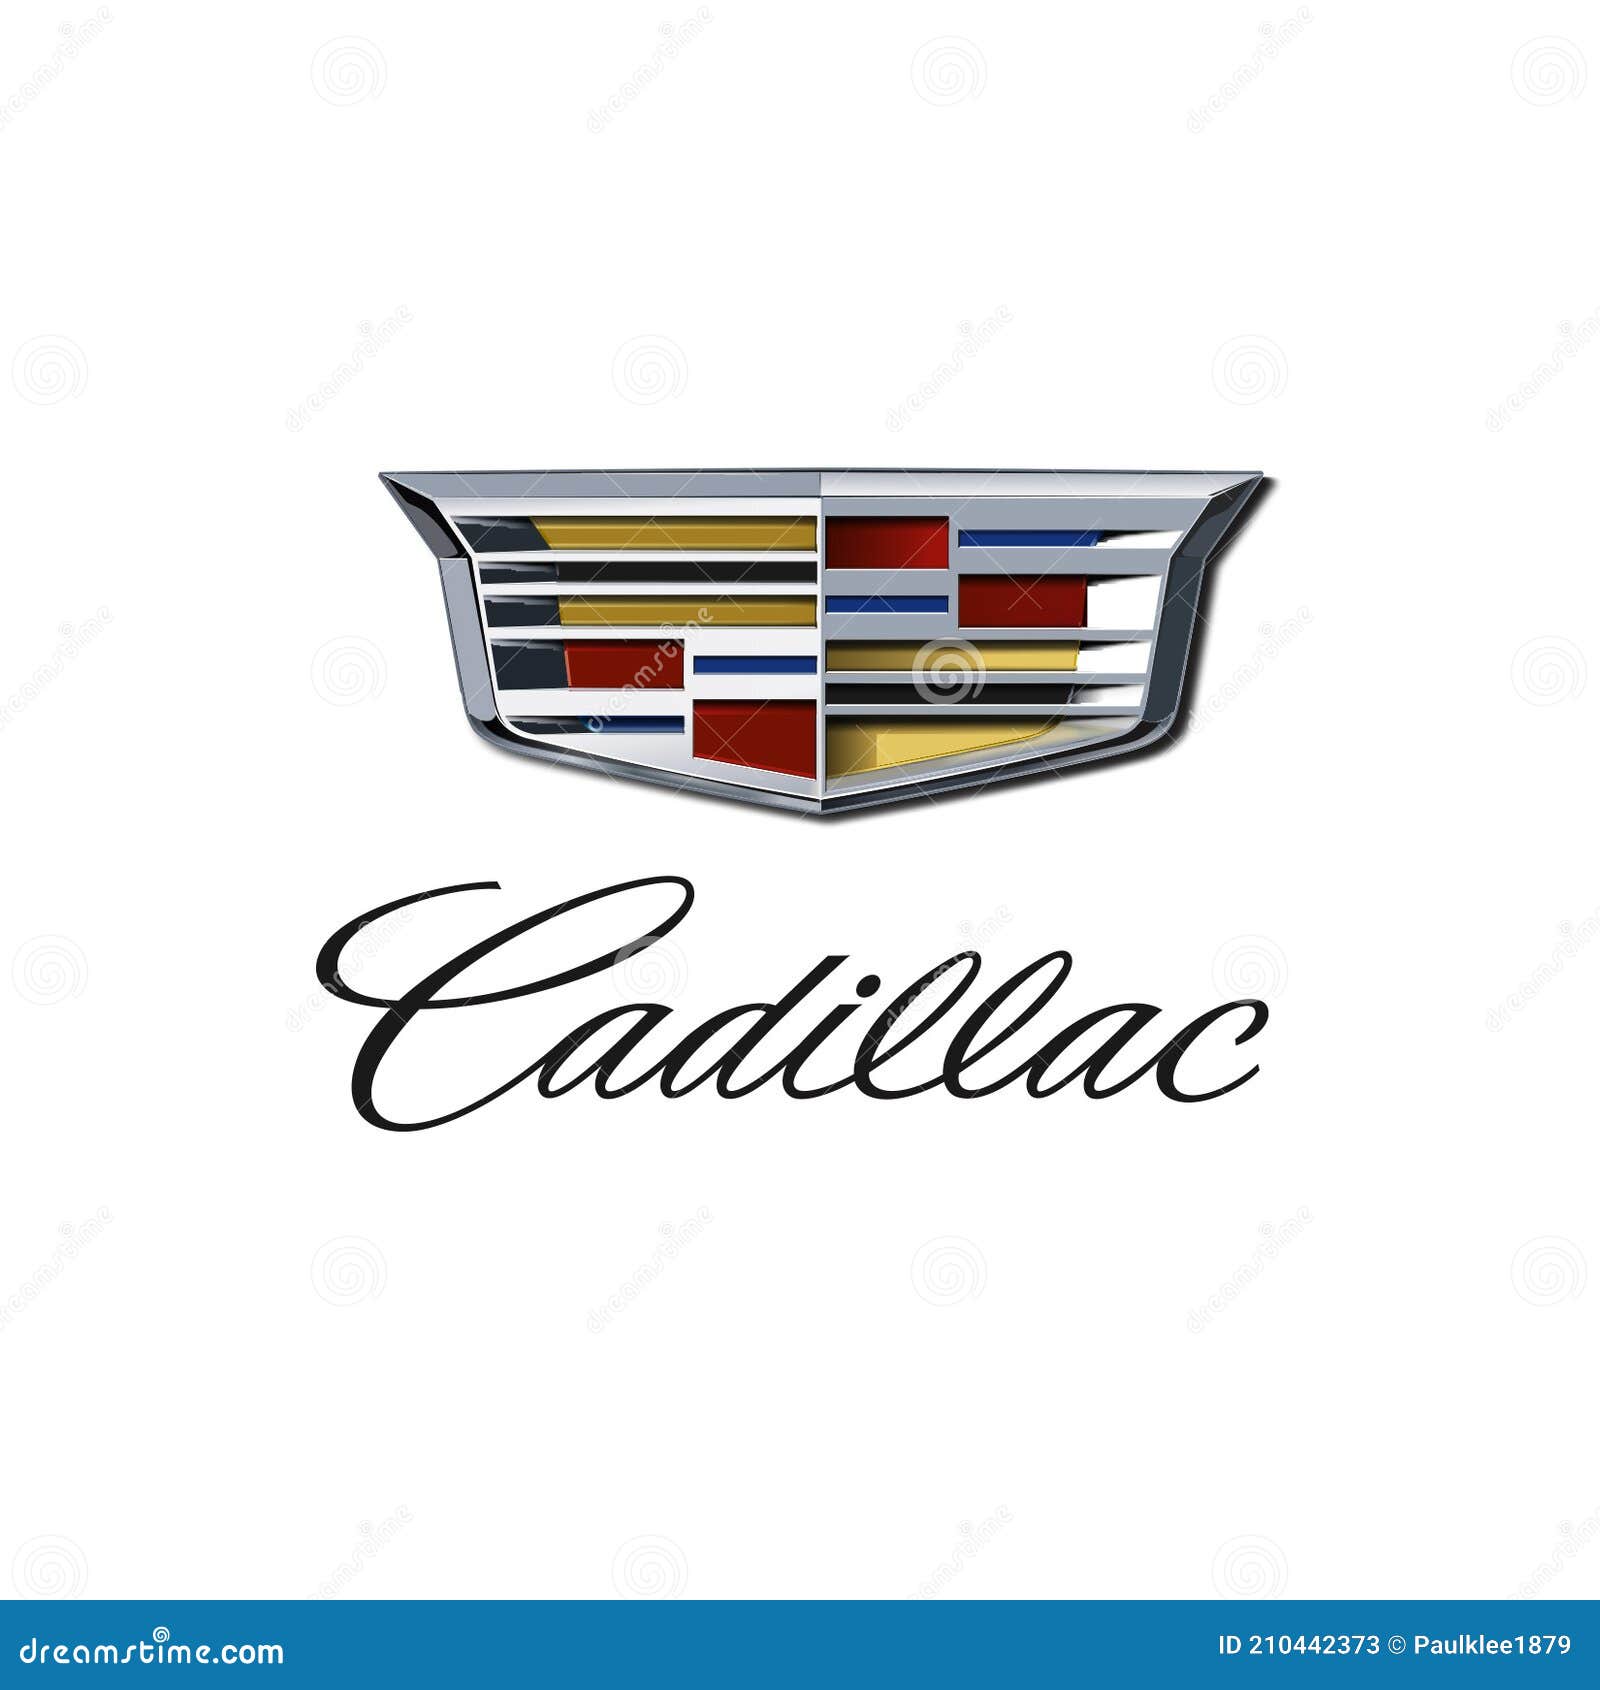 GM Logo [General Motors  01] - PNG Logo Vector Downloads (SVG, EPS)